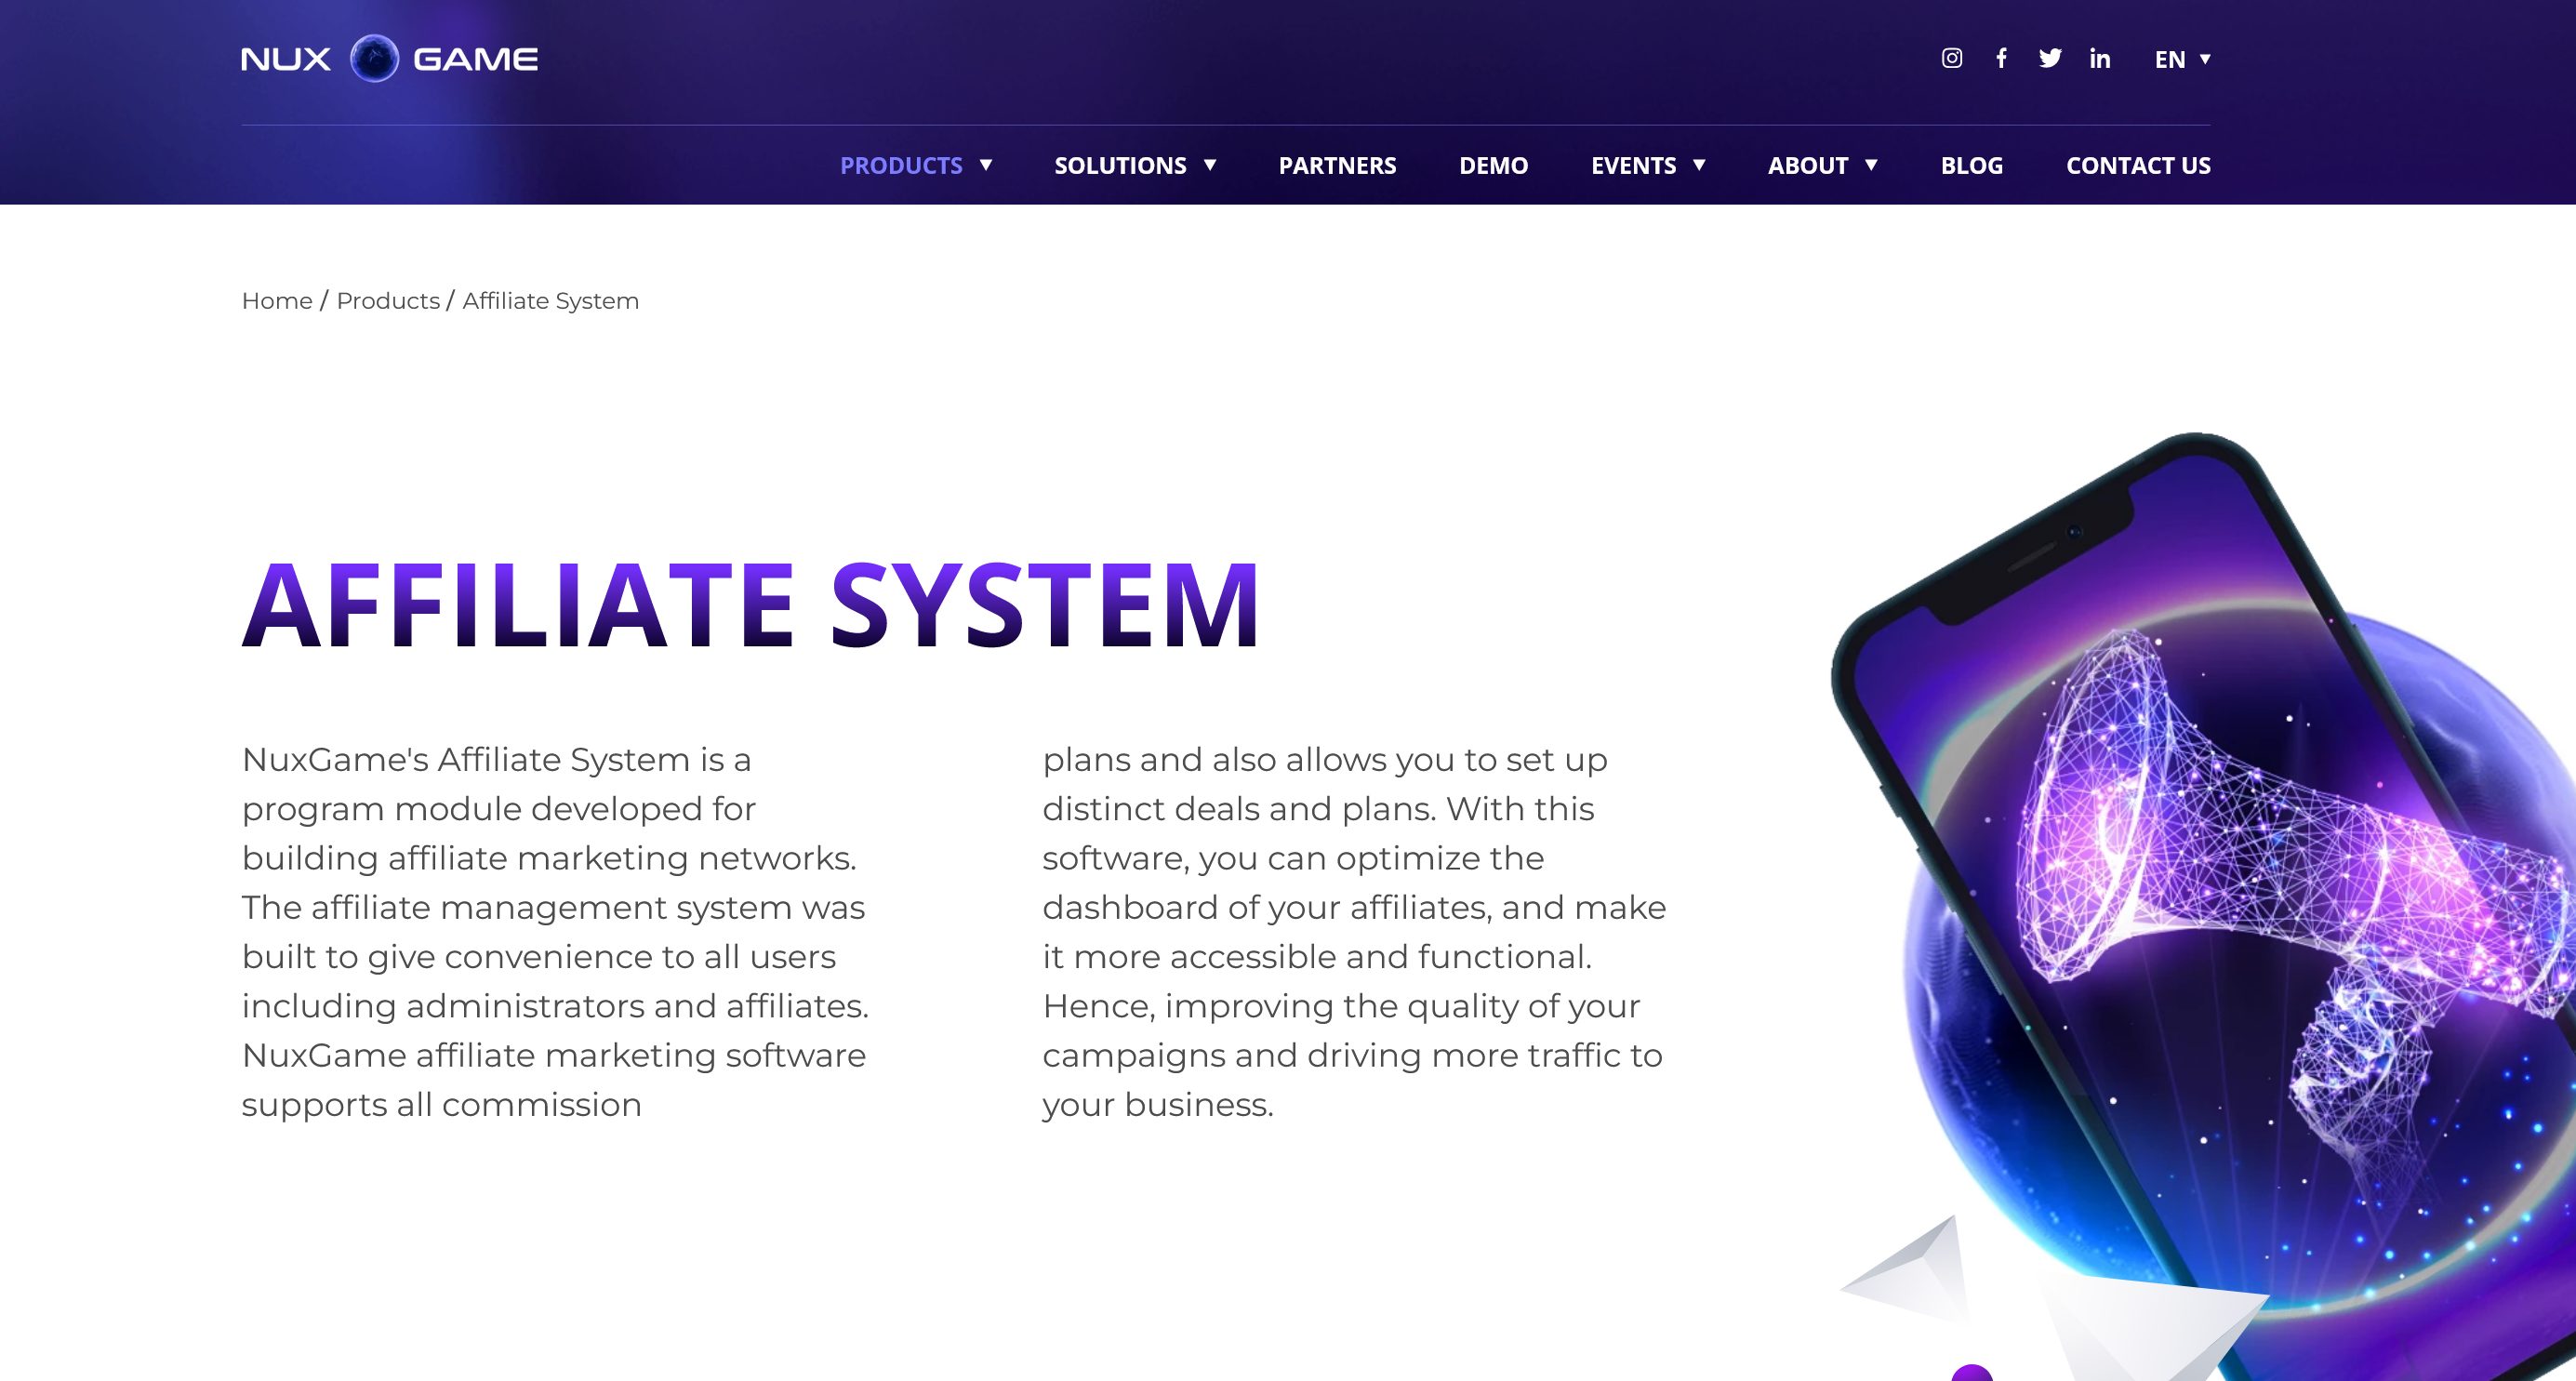 NuxGame Affiliate System เป็นโมดูลโปรแกรมที่ออกแบบมาสำหรับสร้างเครือข่ายการตลาดแบบพันธมิตร